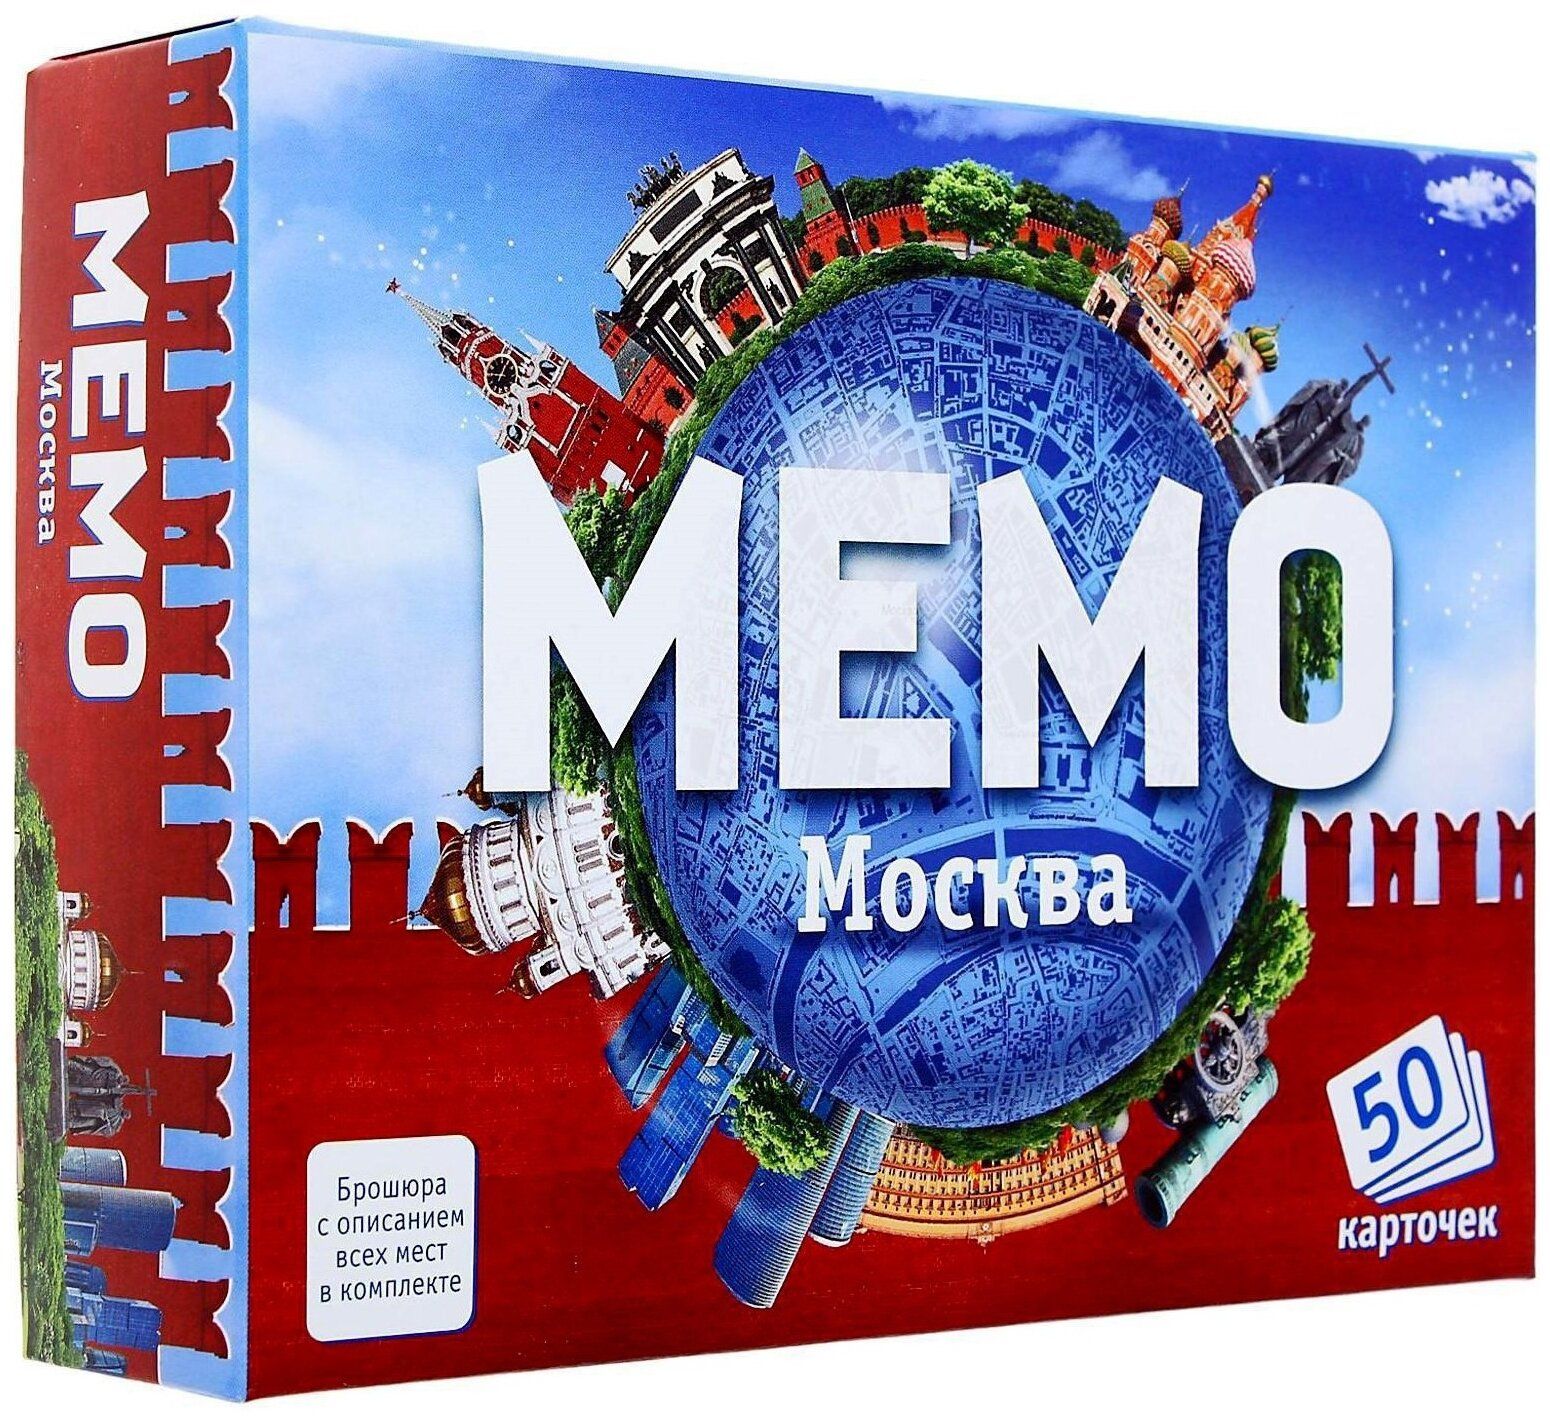 Мемо Москва арт.7205 (50 карточек) /48 цена и фото